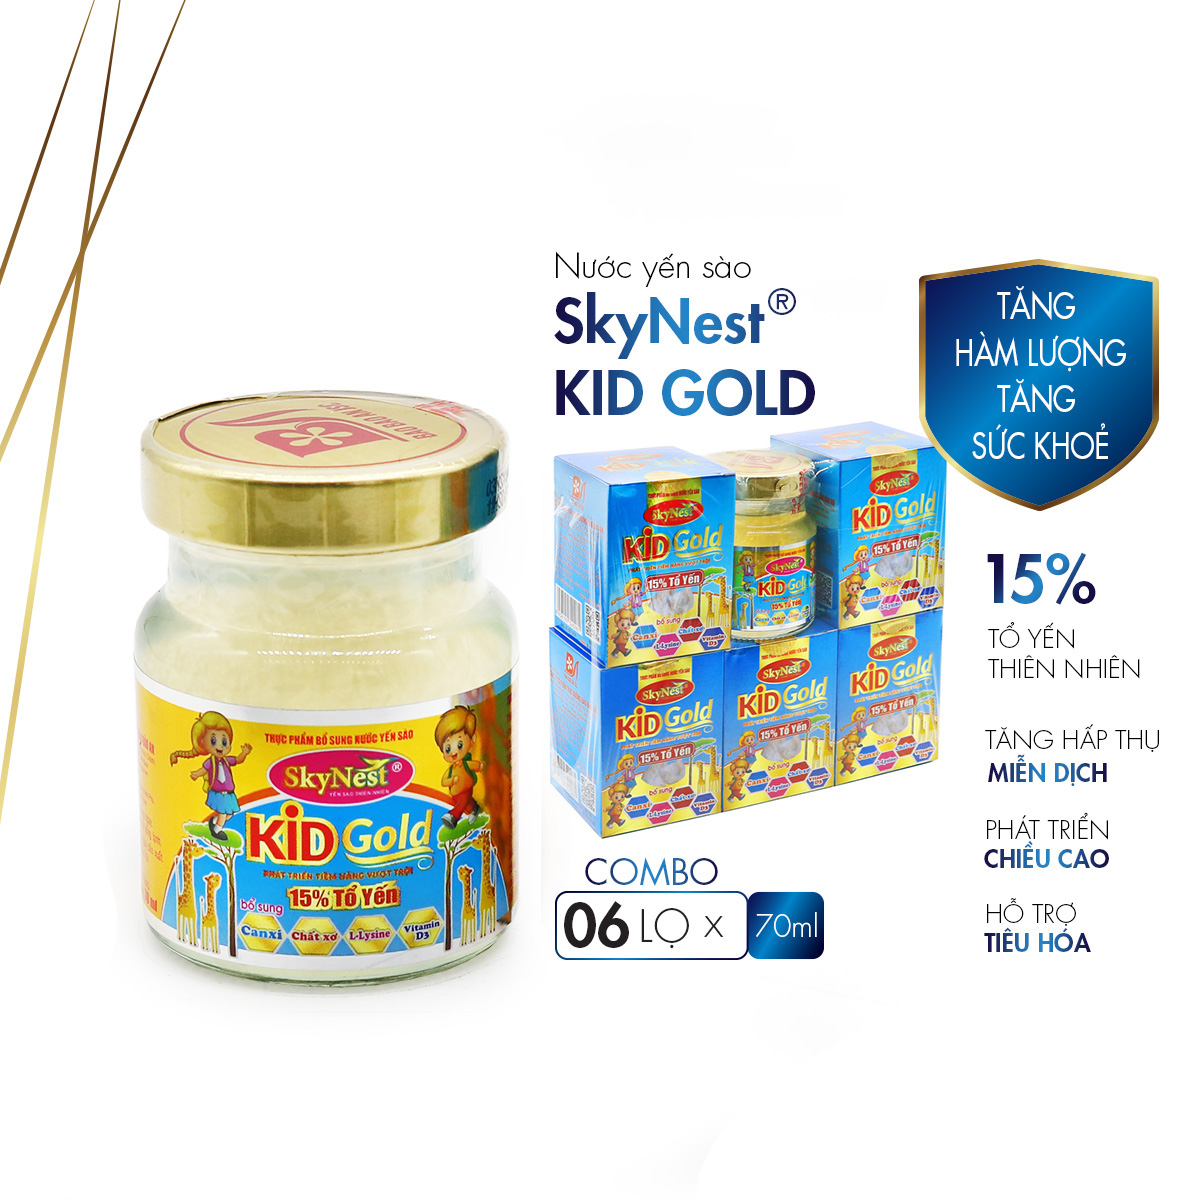 Nước yến sào SkyNest Kid Gold 15% Tổ yến - Thực phẩm bổ sung cho trẻ nhỏ - lọ 70m